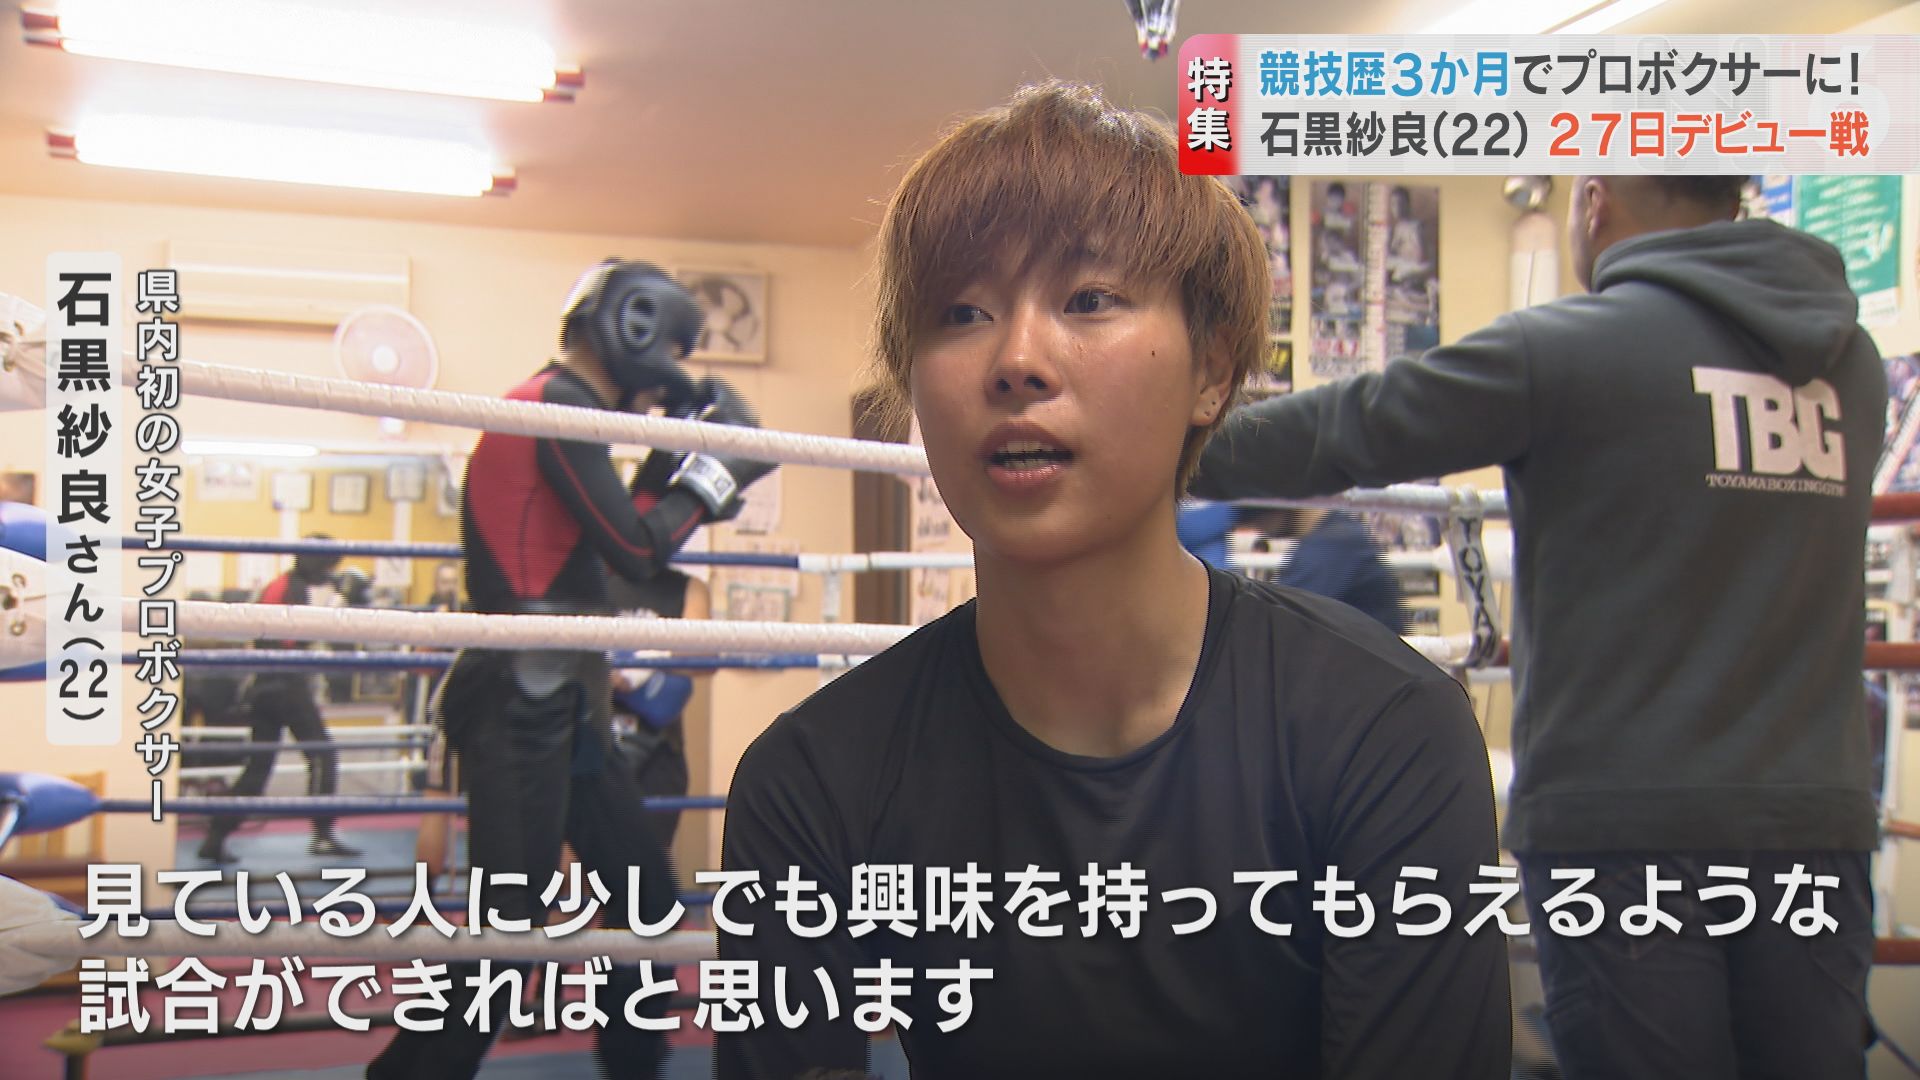 周りの応援と支えを一番に感じている 22歳女子プロボクサー デビュー戦へ 富山 富山県のニュース チューリップテレビ